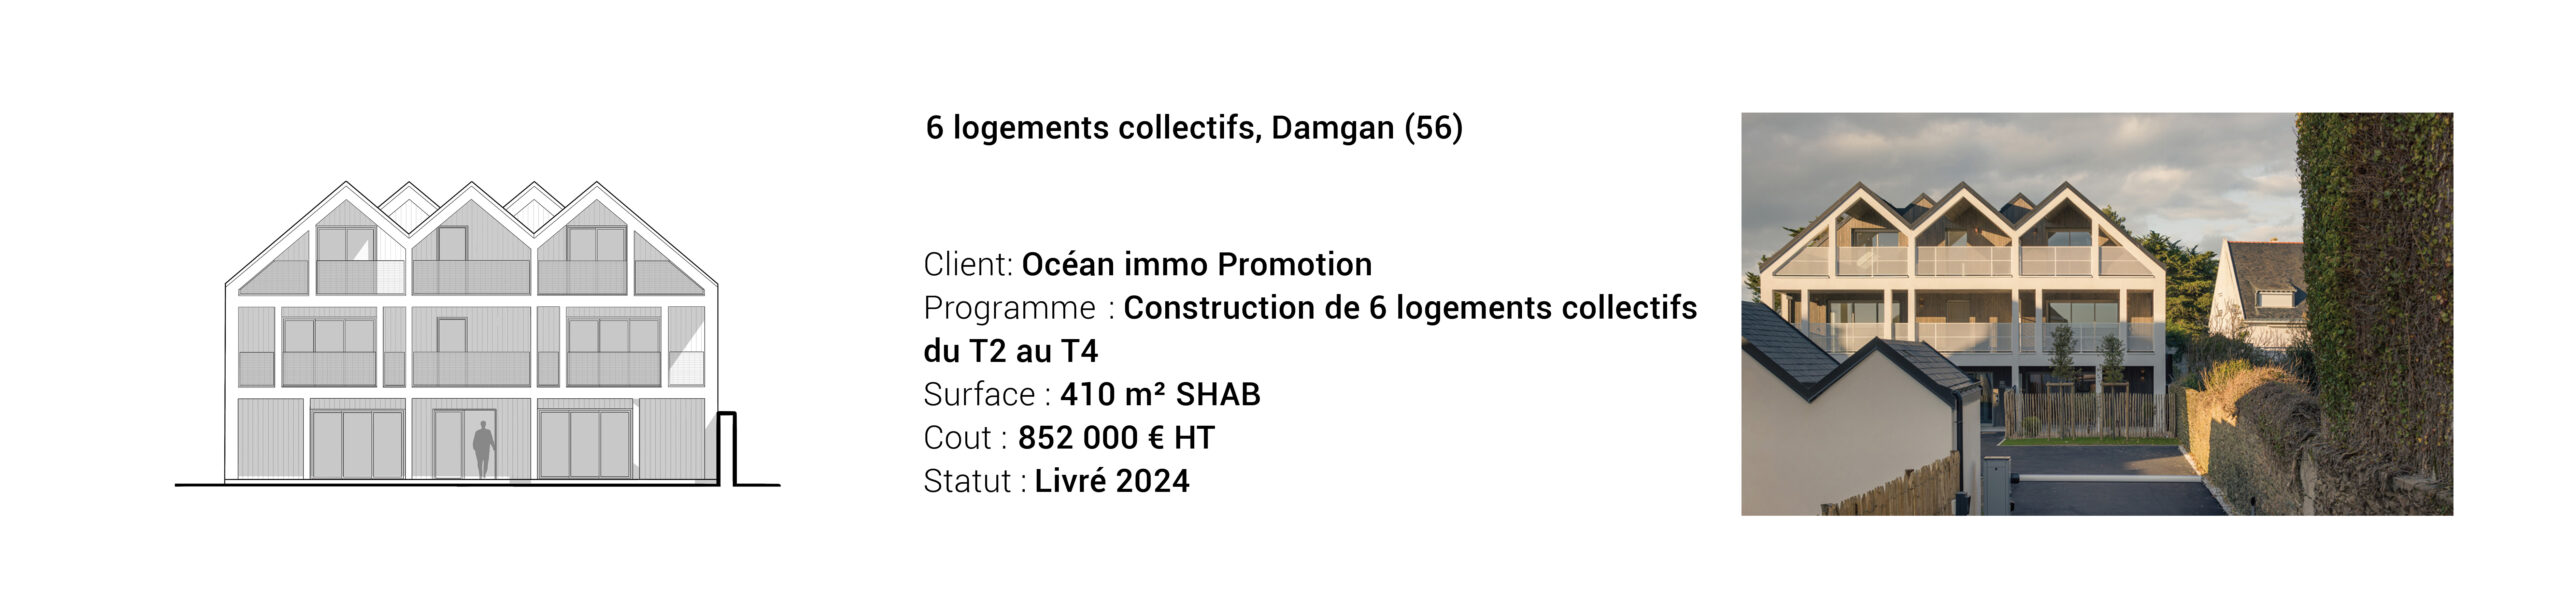 Damgan Les Terrasses de la plage Océan Immo Promotion MSR Architecture logements collectifs